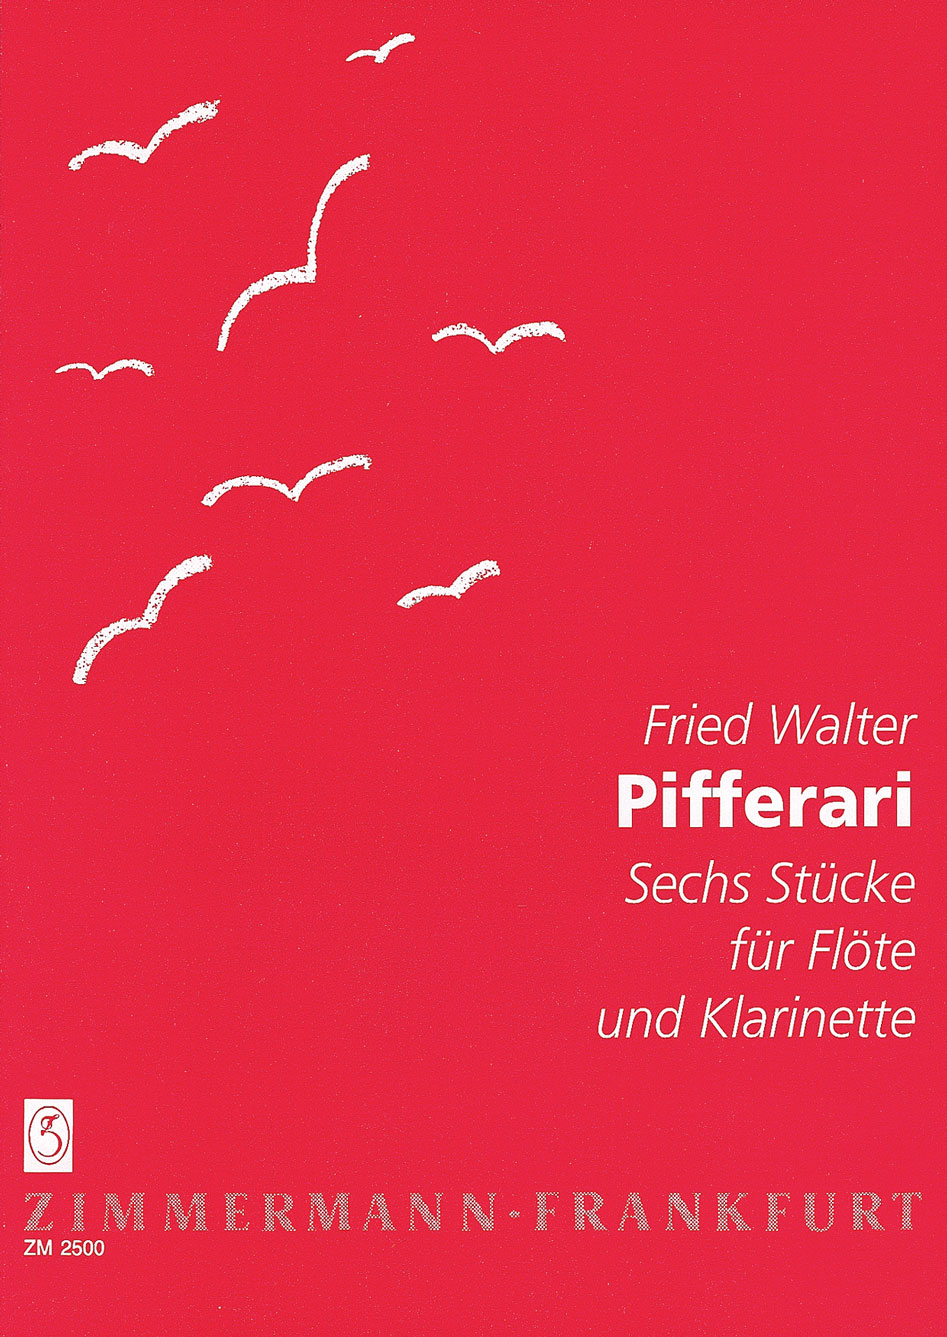 Fried-Walter-Pifferari-Fl-Clr-_0001.JPG